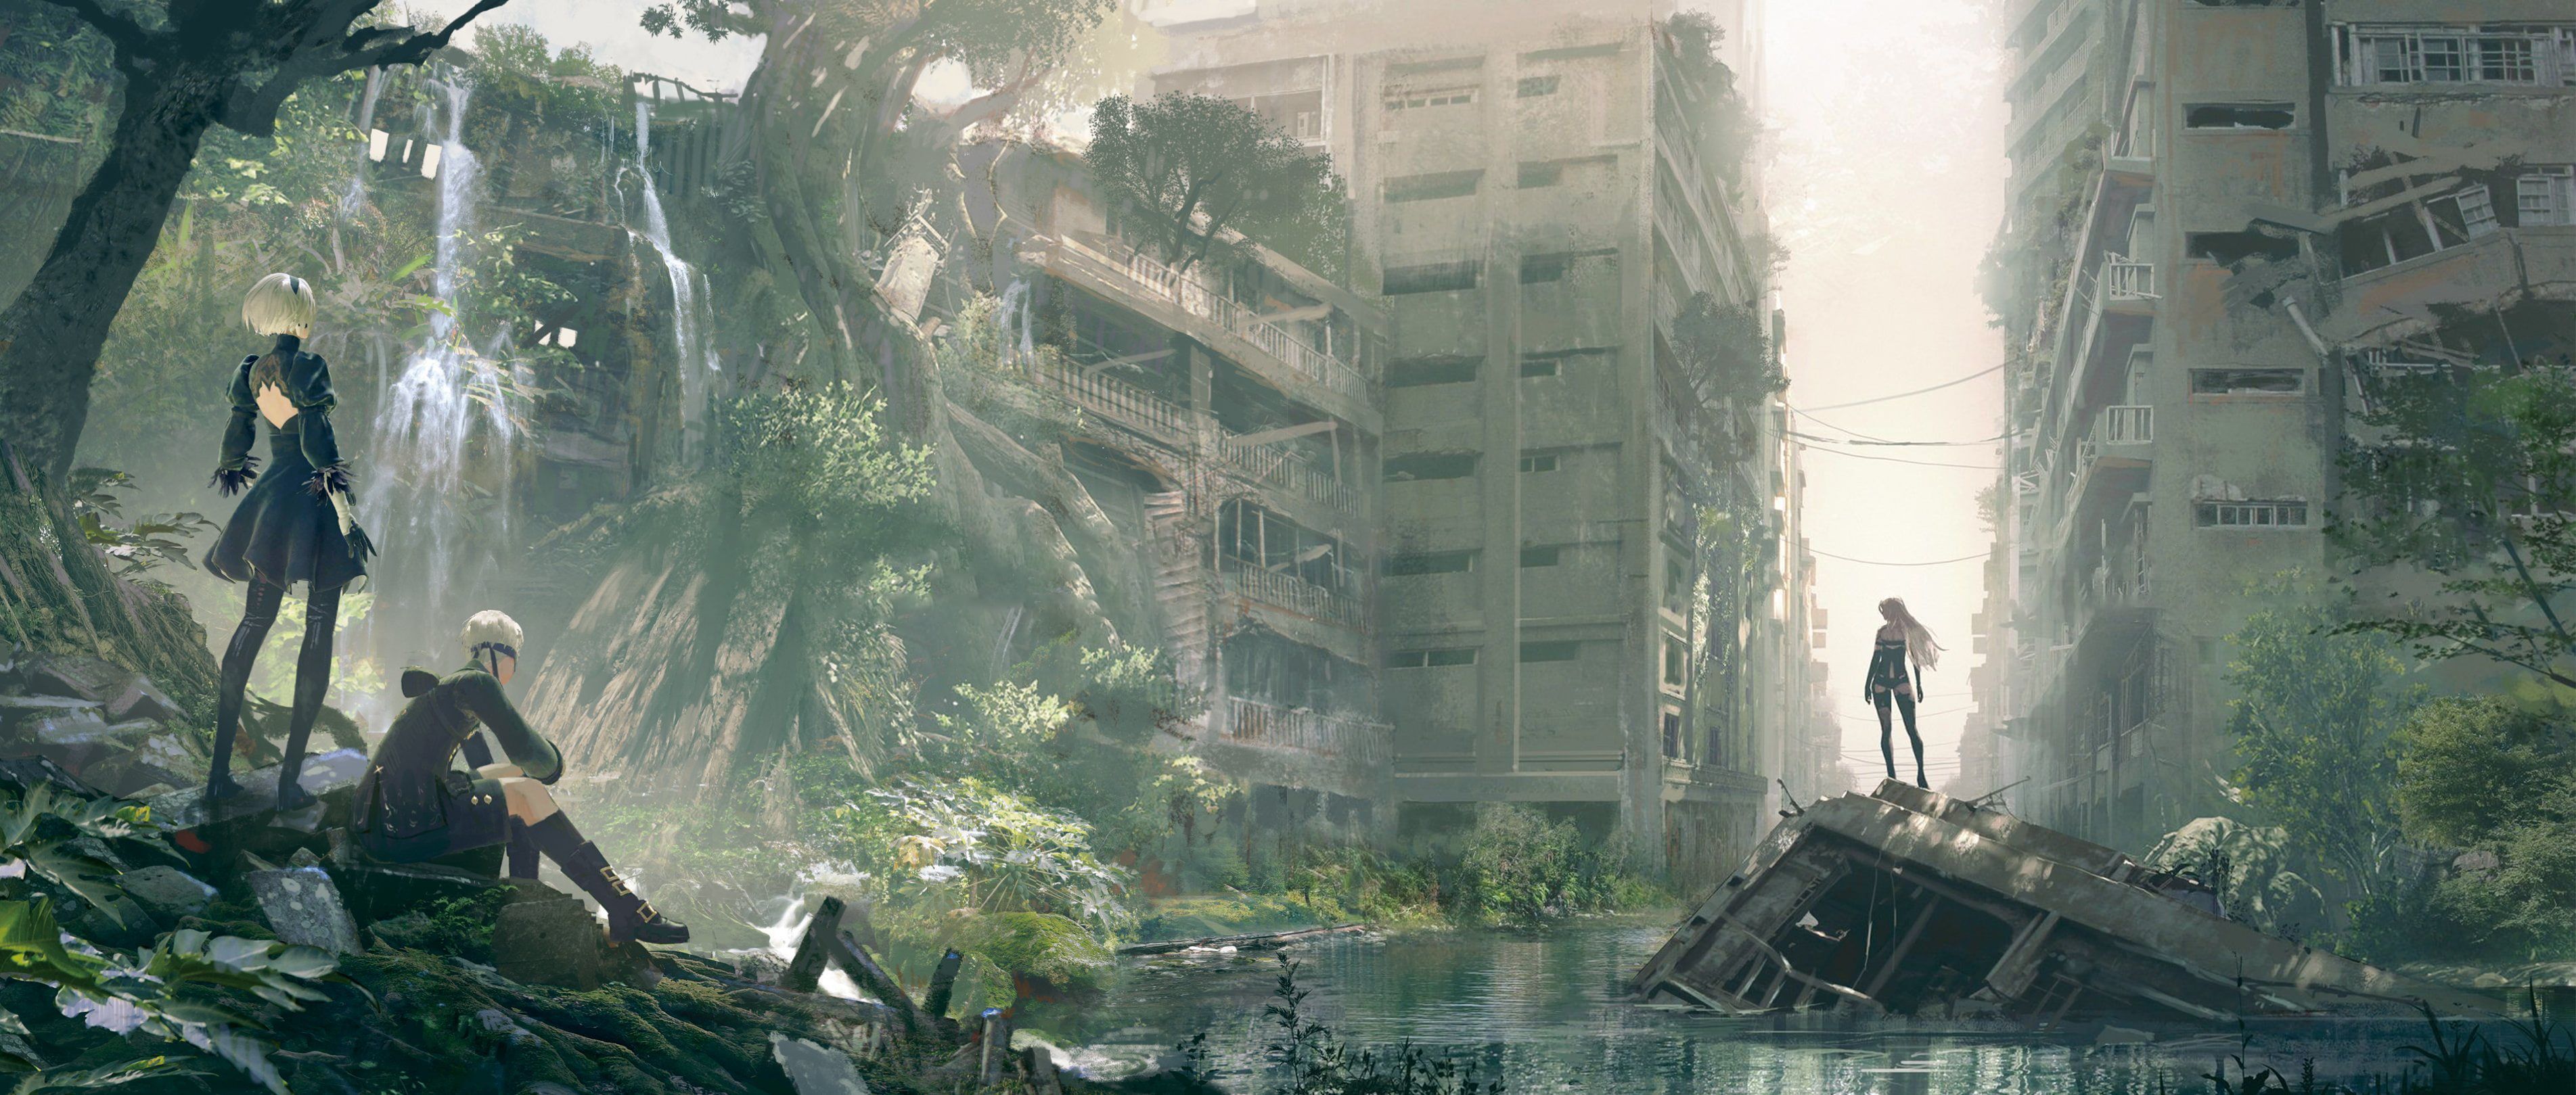 Nier: Automata B S #A2 #anime video games #ruin #cityscape